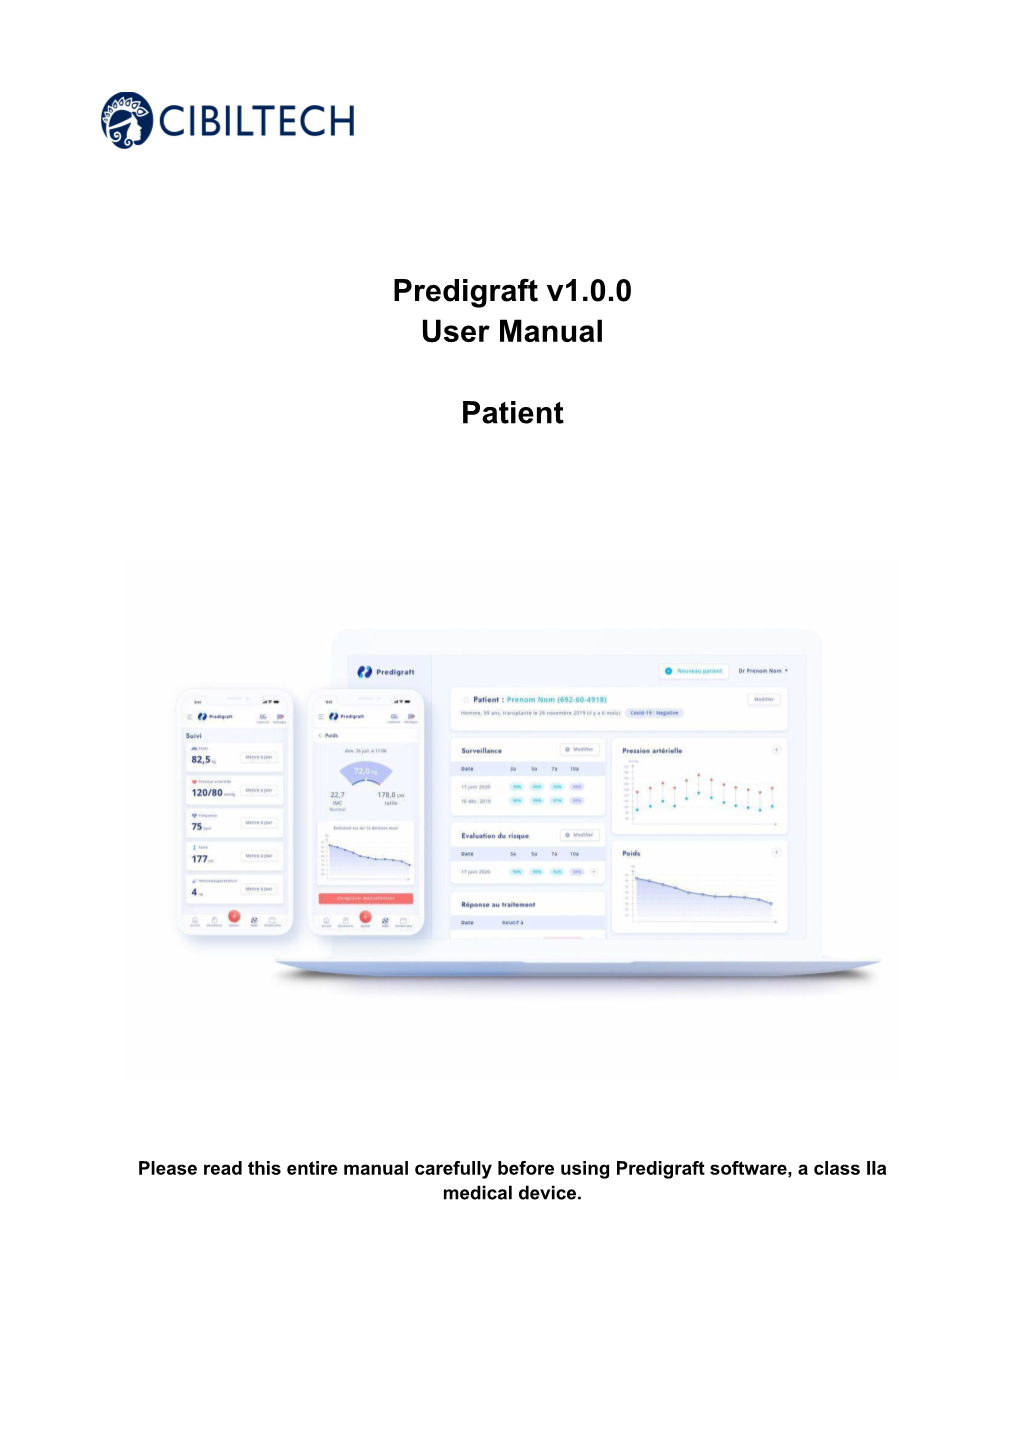 Predigraft V1.0.0 User Manual Patient